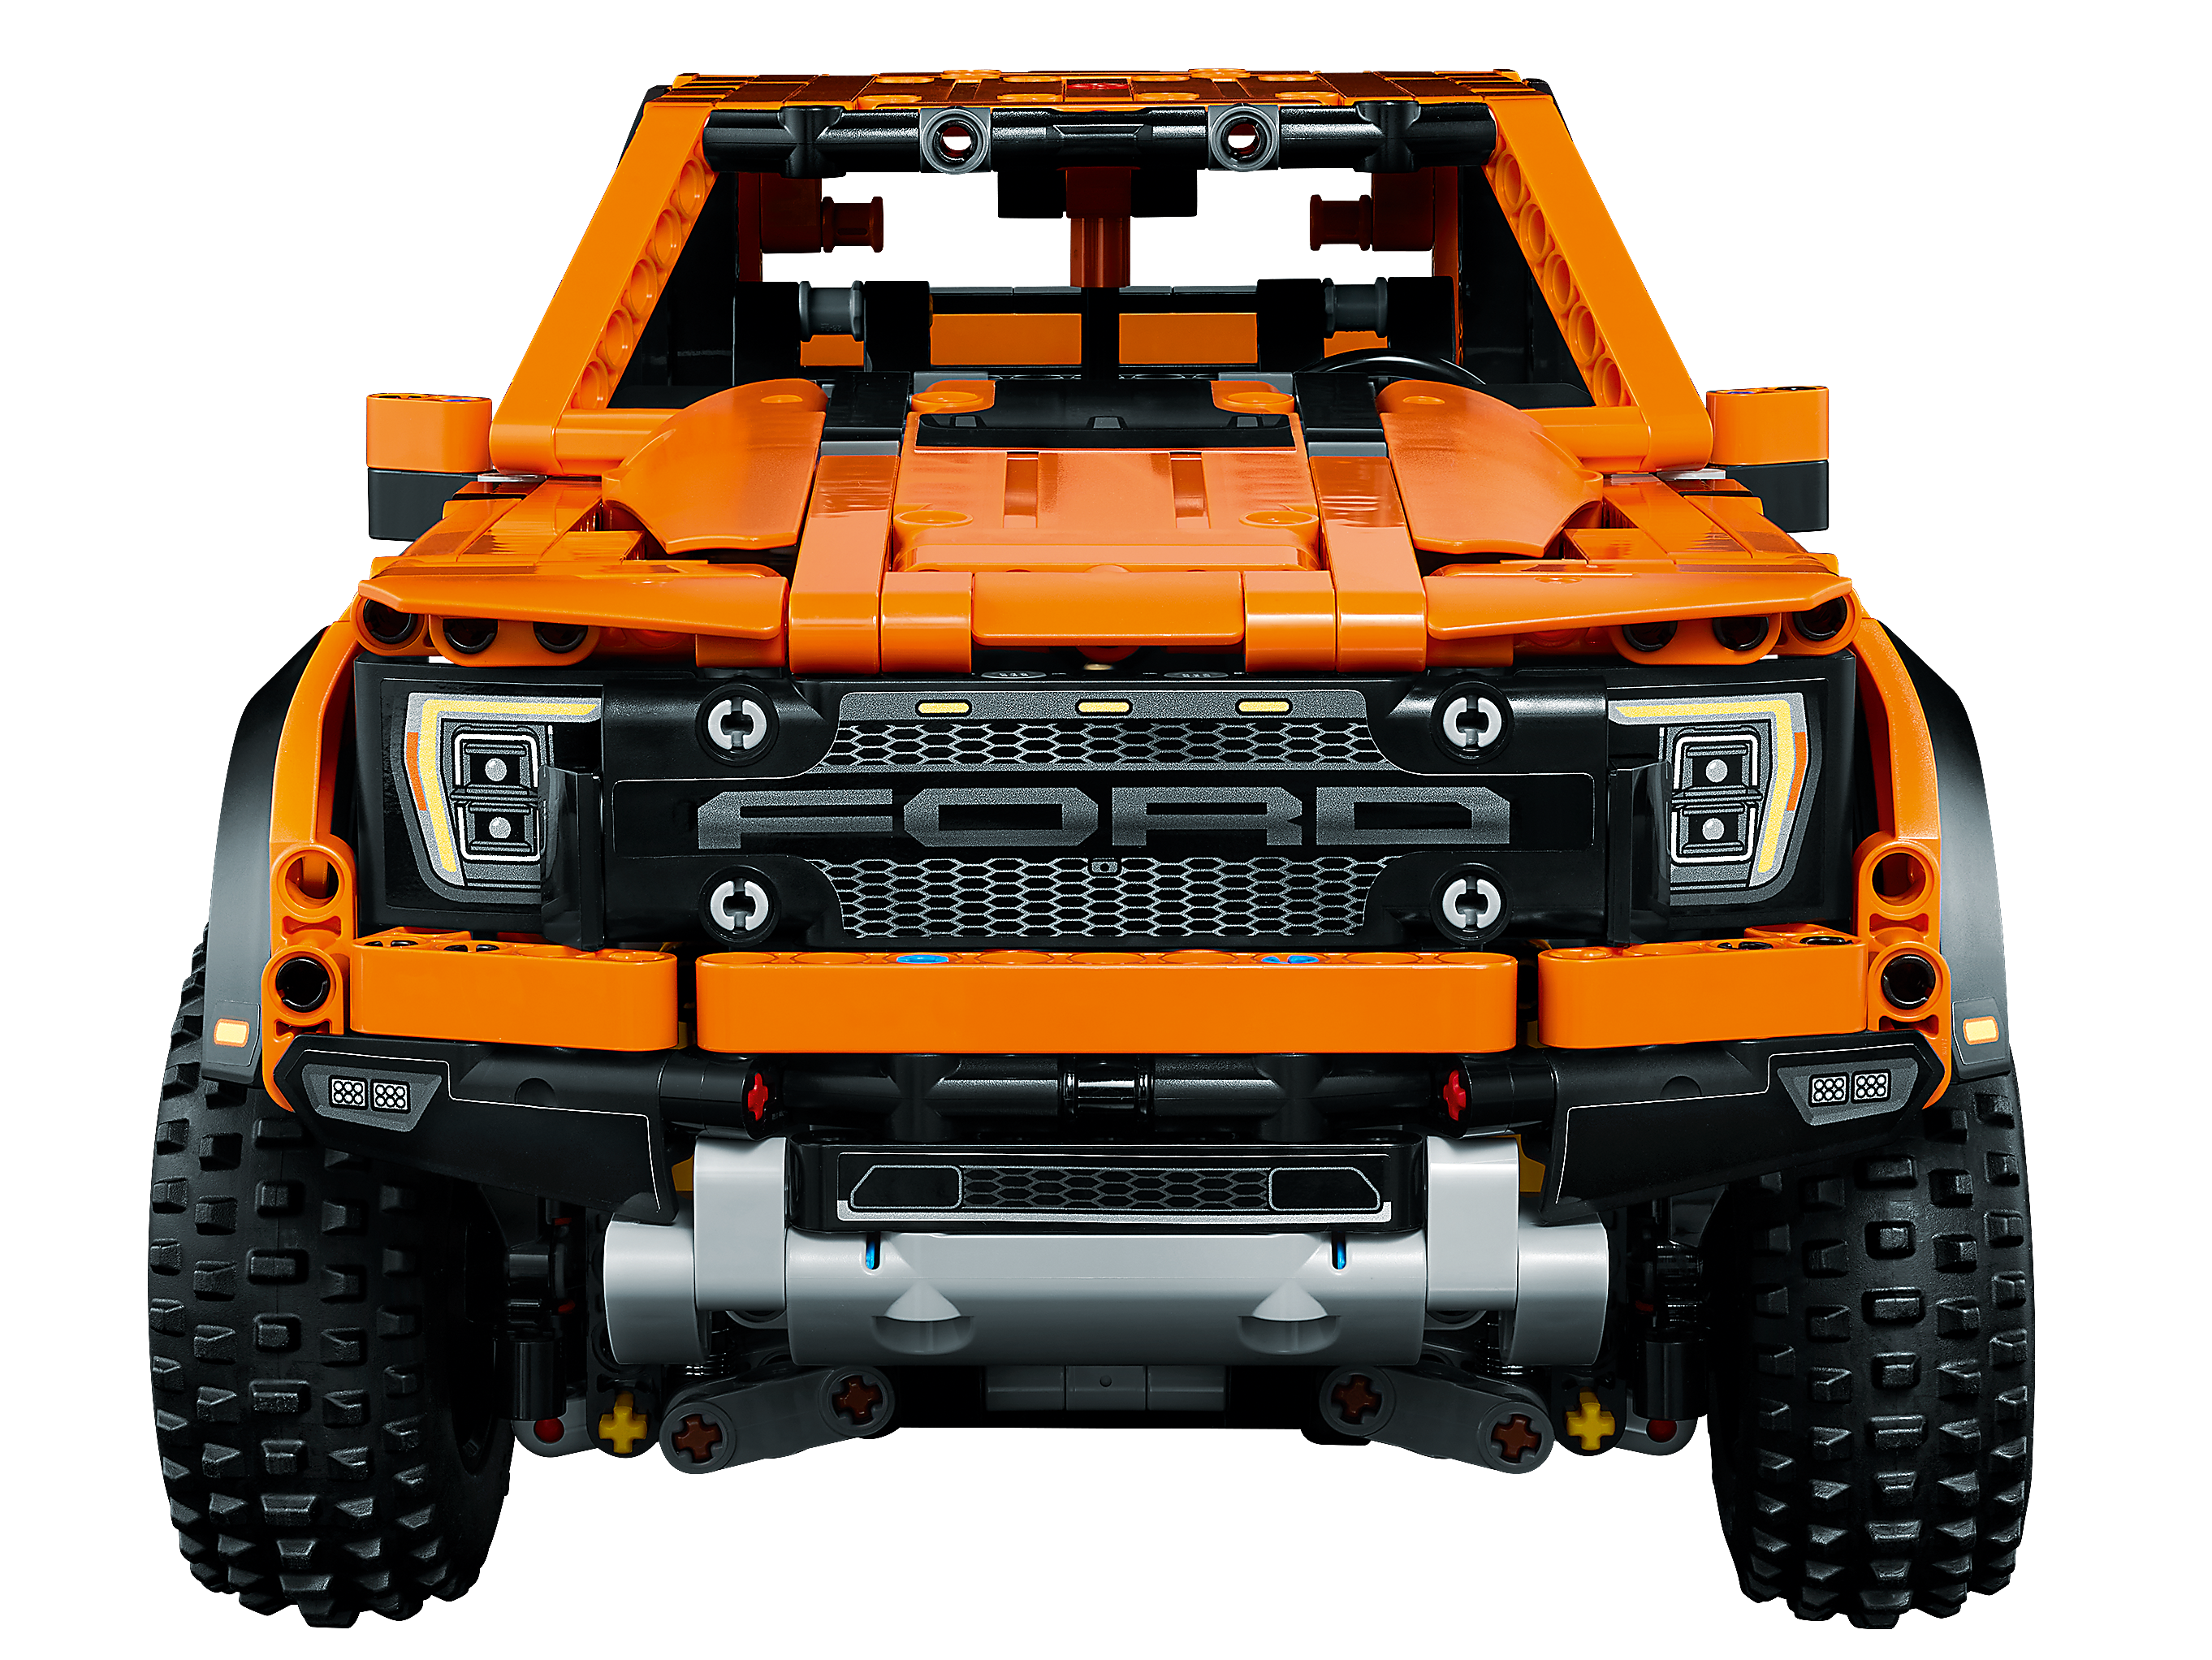 XGREPACK Kit d'éclairage télécommandé pour Lego Technic Ford F-150 Raptor  42126 Kit de Construction Kit de lumière (Non Inclus Les Ensembles Lego)